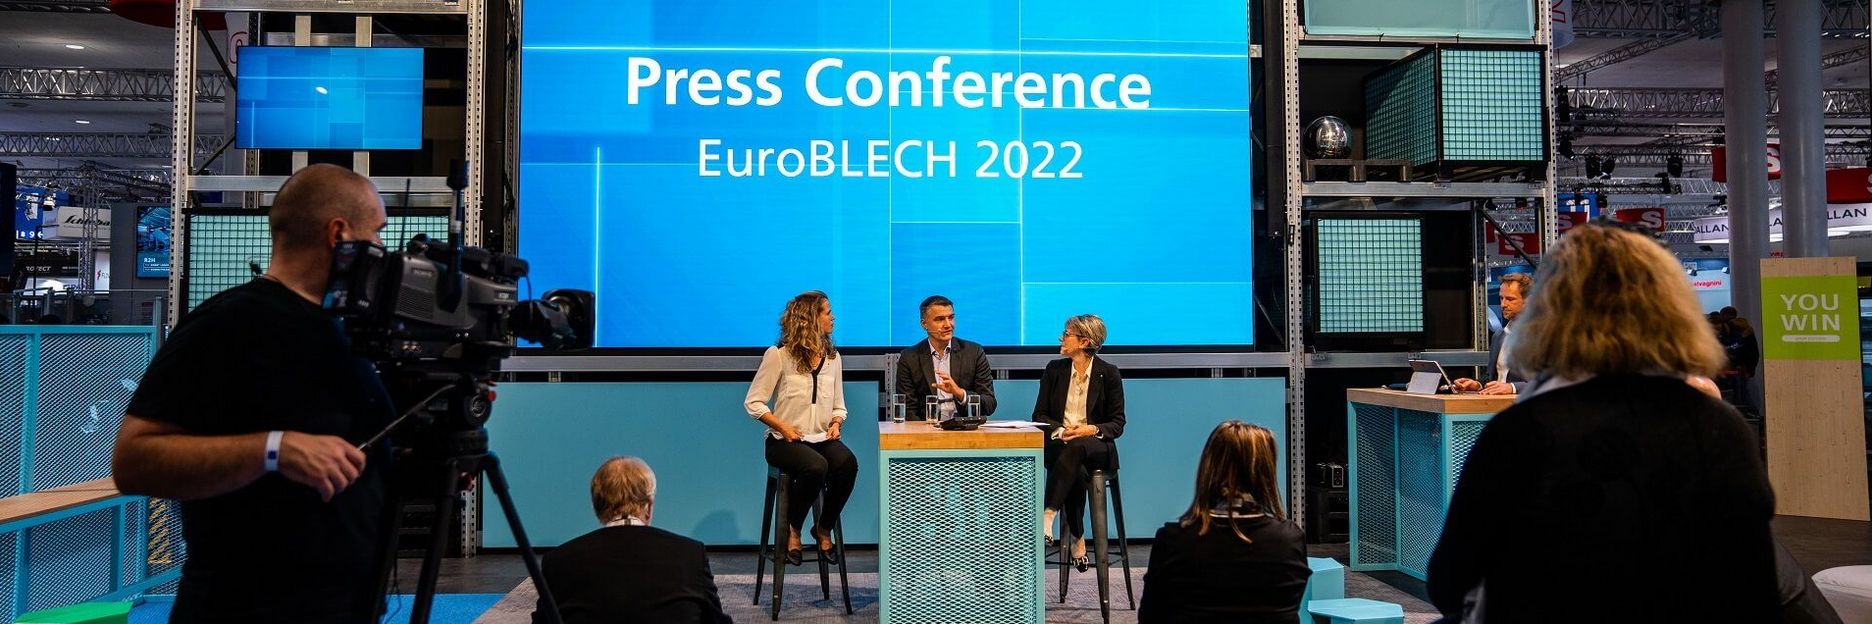 Stage_Pressekonferenz_EuroBLECH